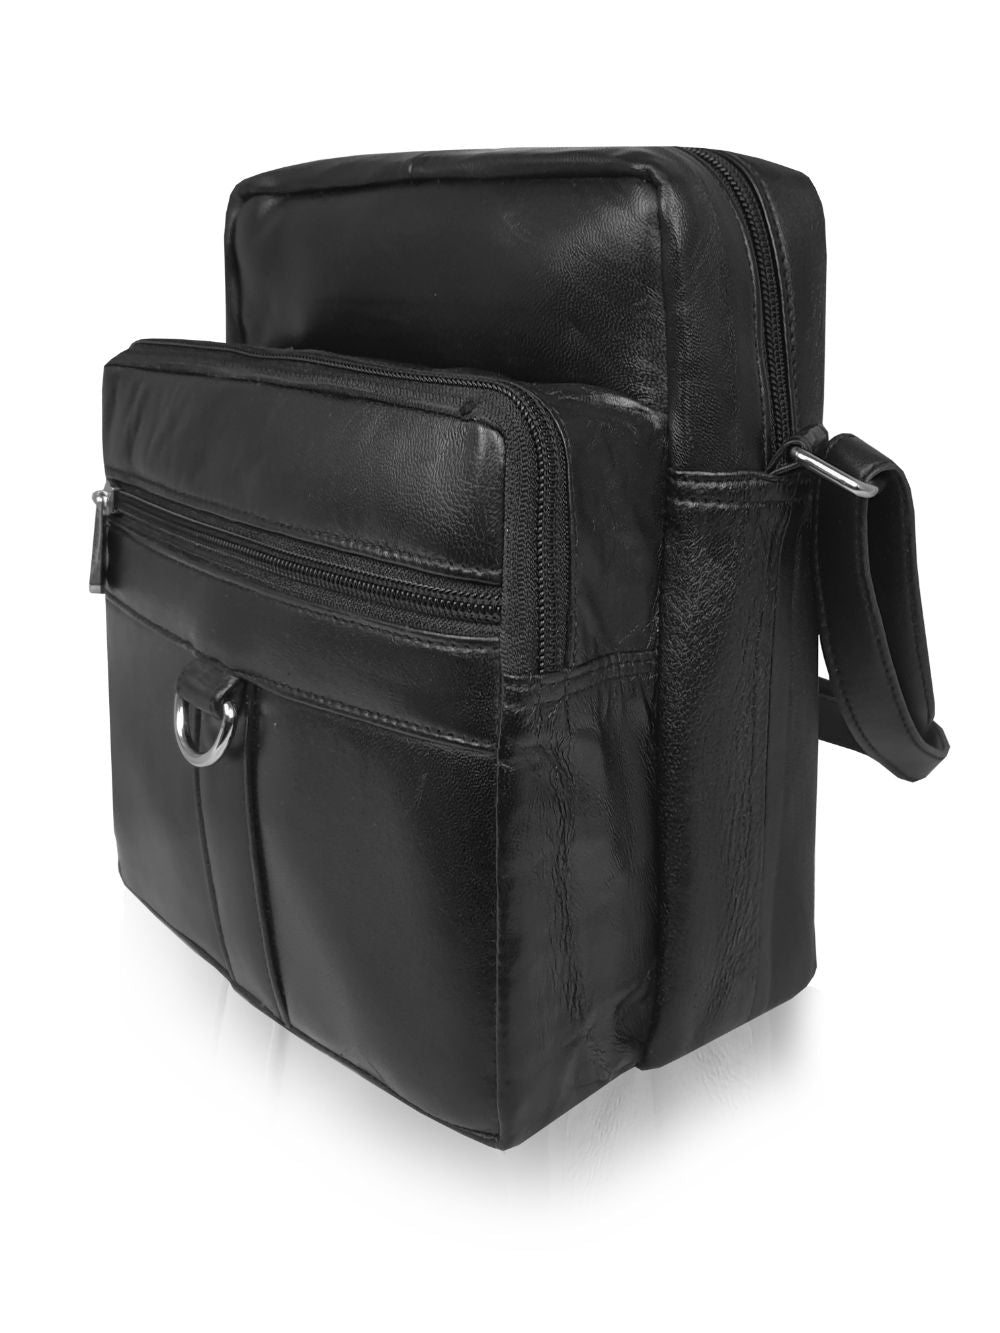 Roamlite Travel Organiser Pouch Black Leather RL505 